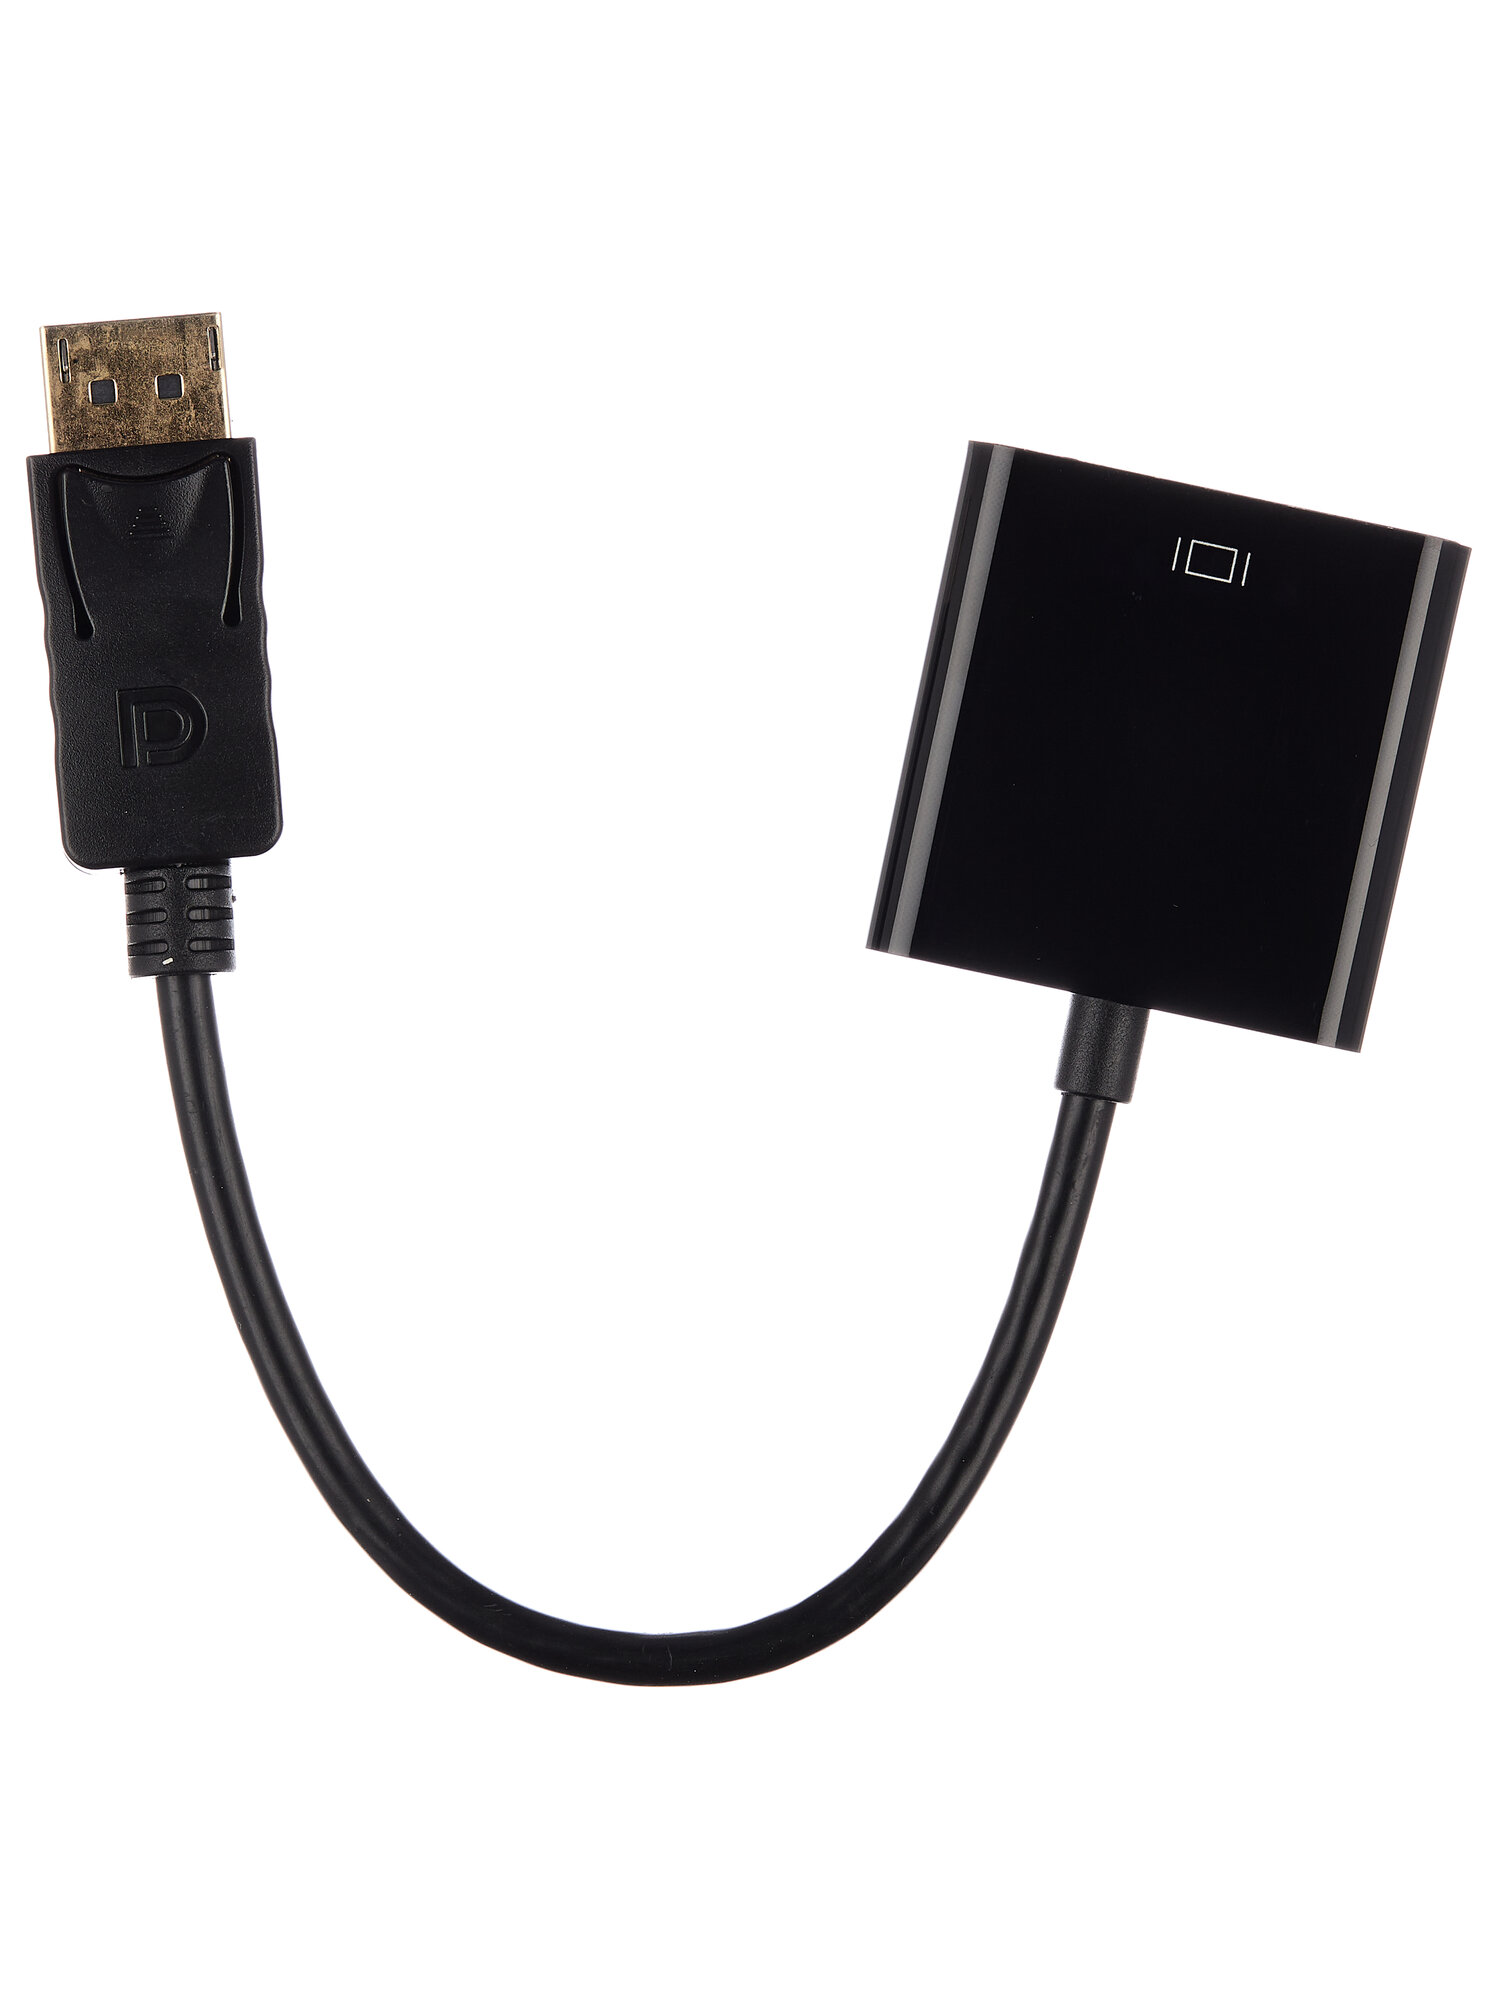 Переходник DisplayPort HDMI адаптер для мониторов компьютеров ноутбуков PC телевизоров PS3 PS4 и других приставок